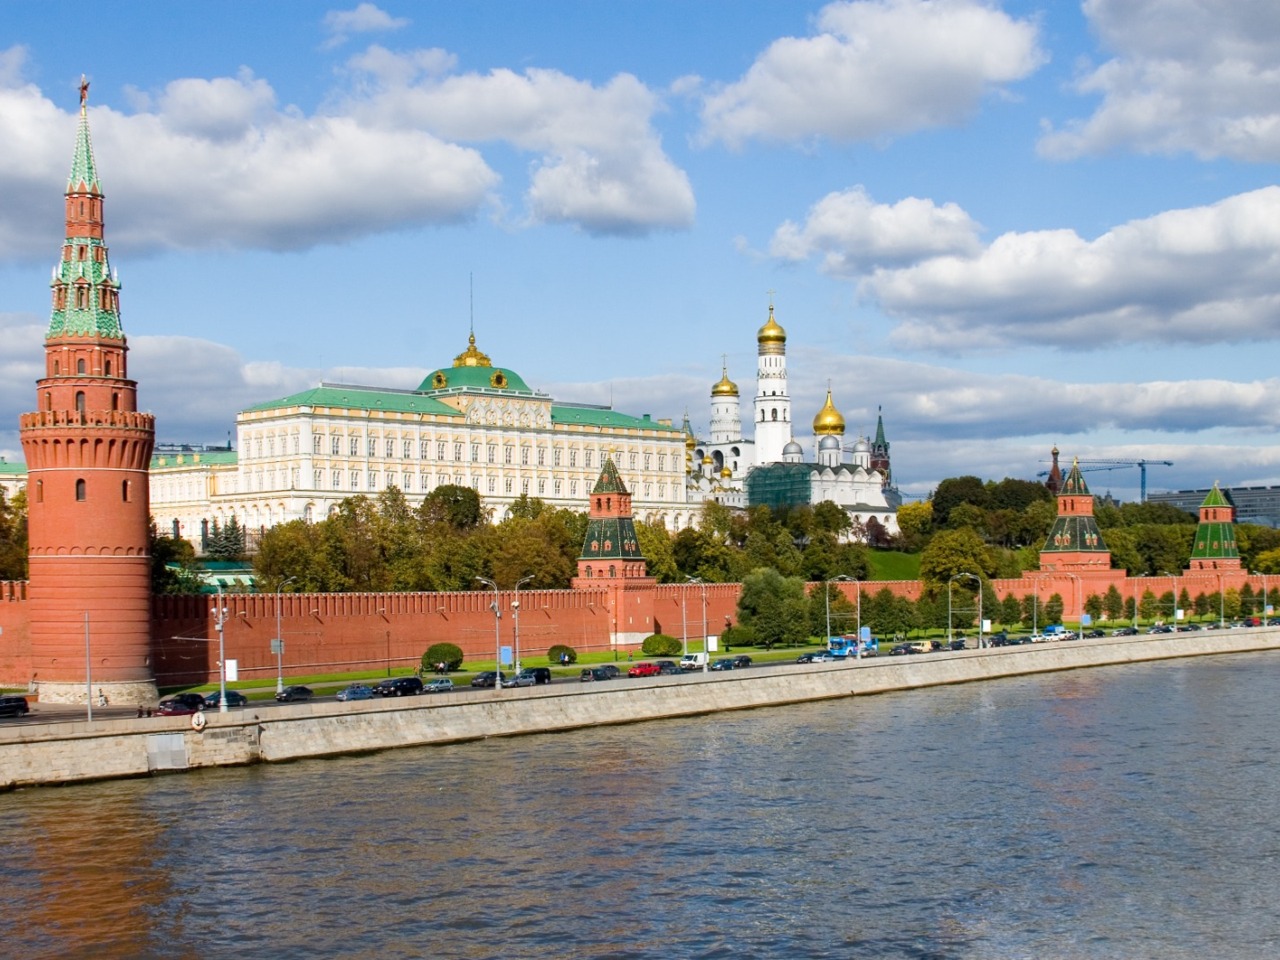 Москва средневековая: Варварка и Зарядье  | Цена 8000₽, отзывы, описание экскурсии